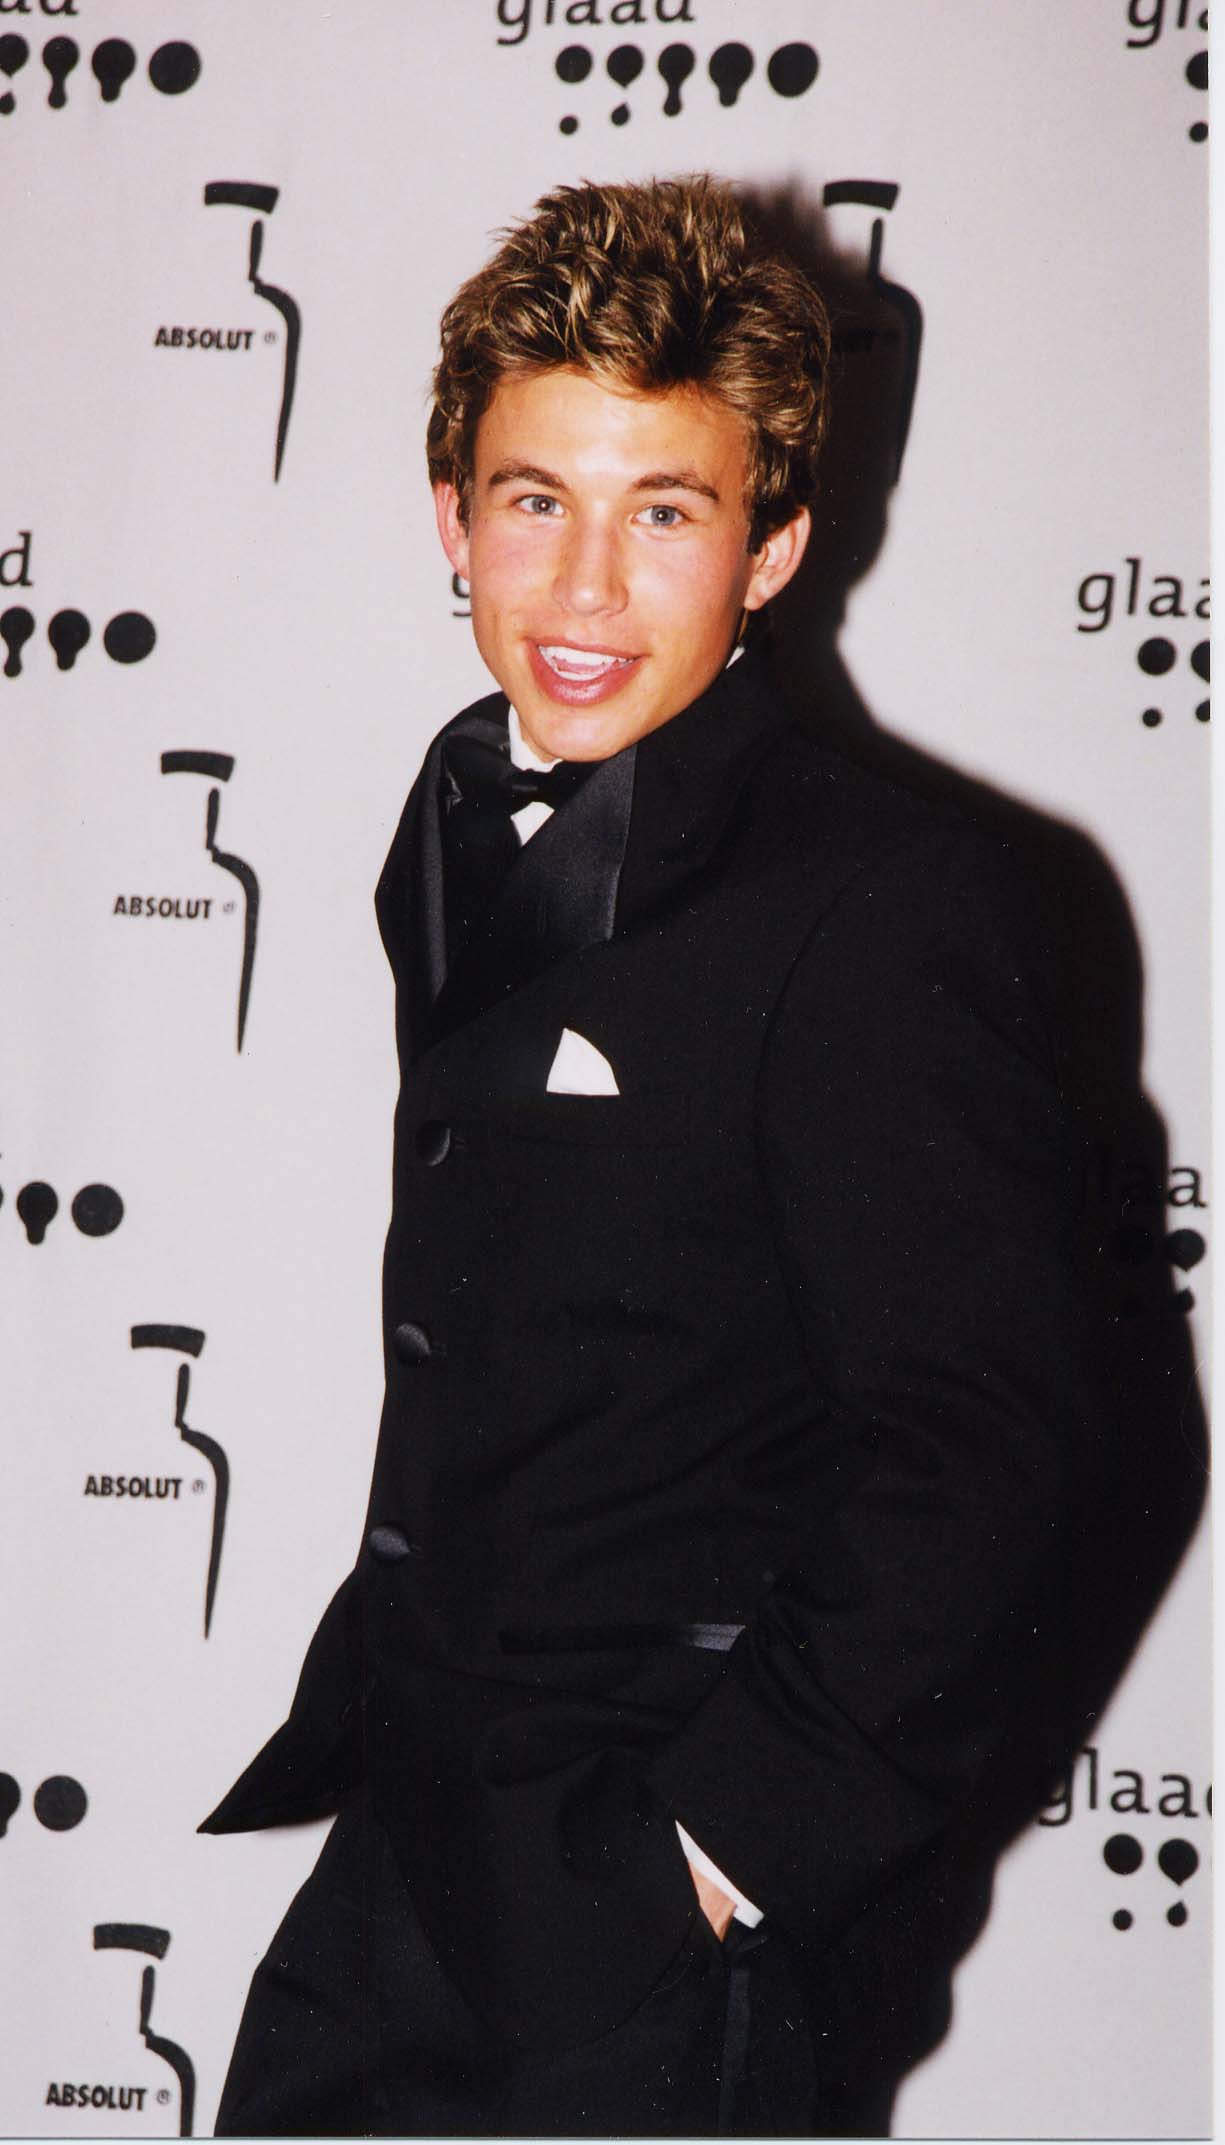 Jonathan Taylor Thomas durante los Premios GLAAD Media el 15 de abril de 2000 en Los Ángeles, California | Foto: Getty Images